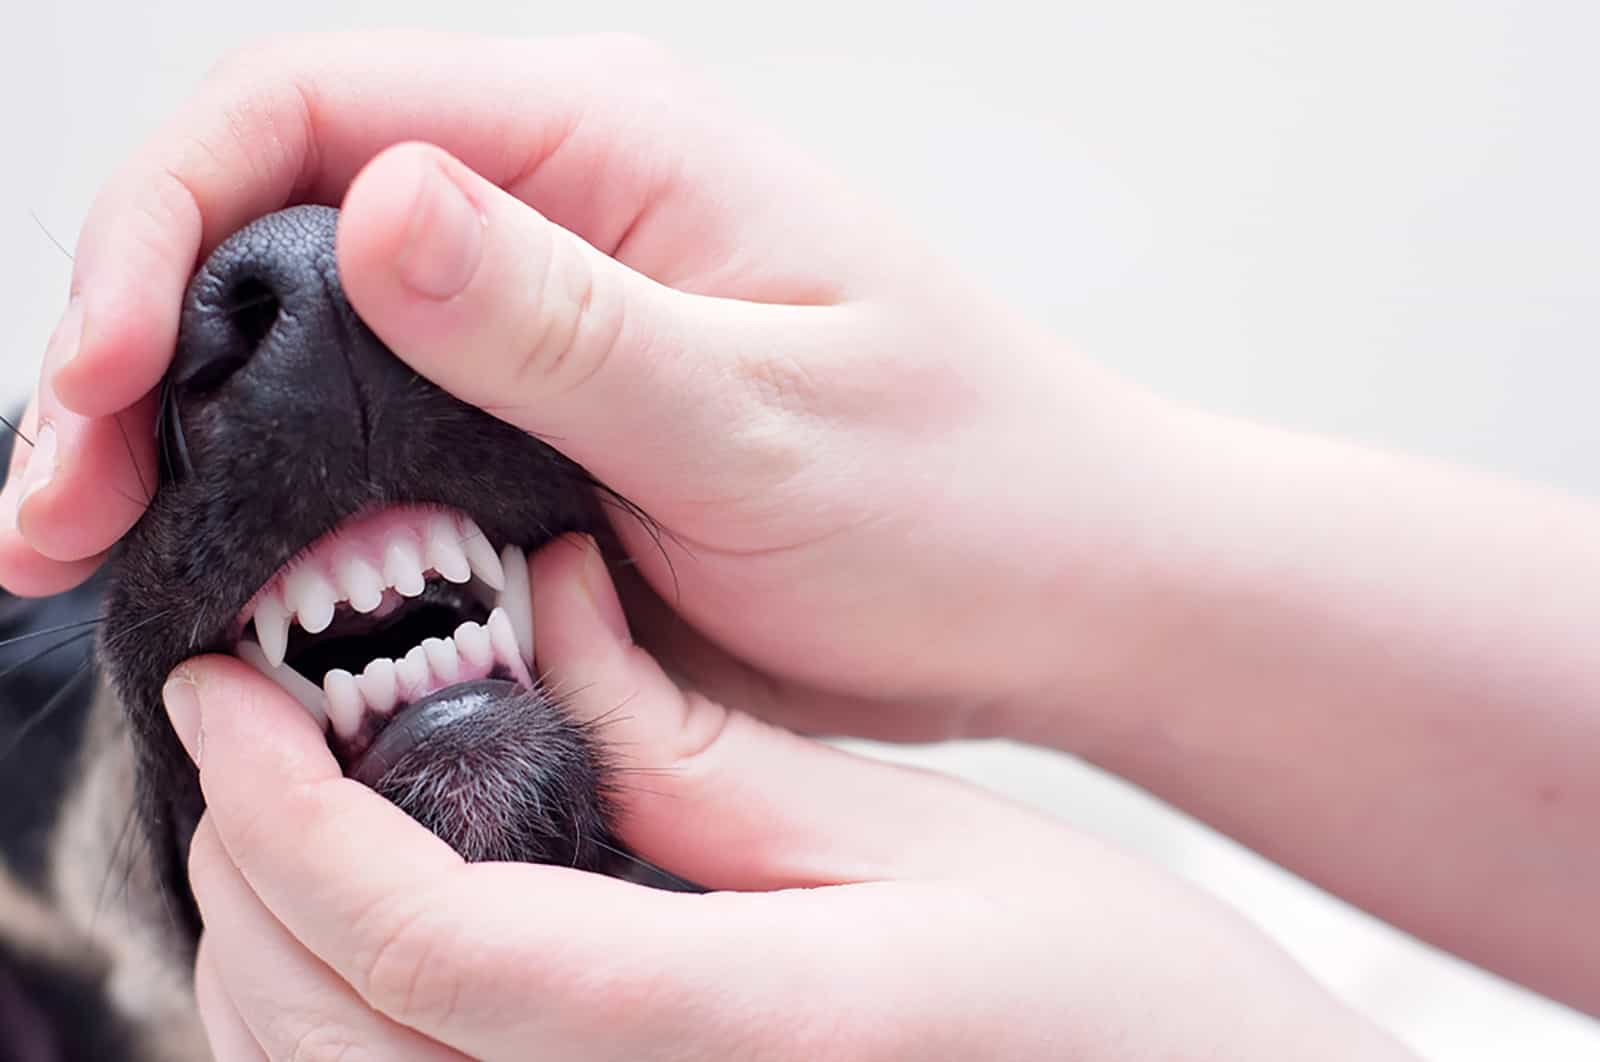 veterinarian checking dog's teeth at an examination